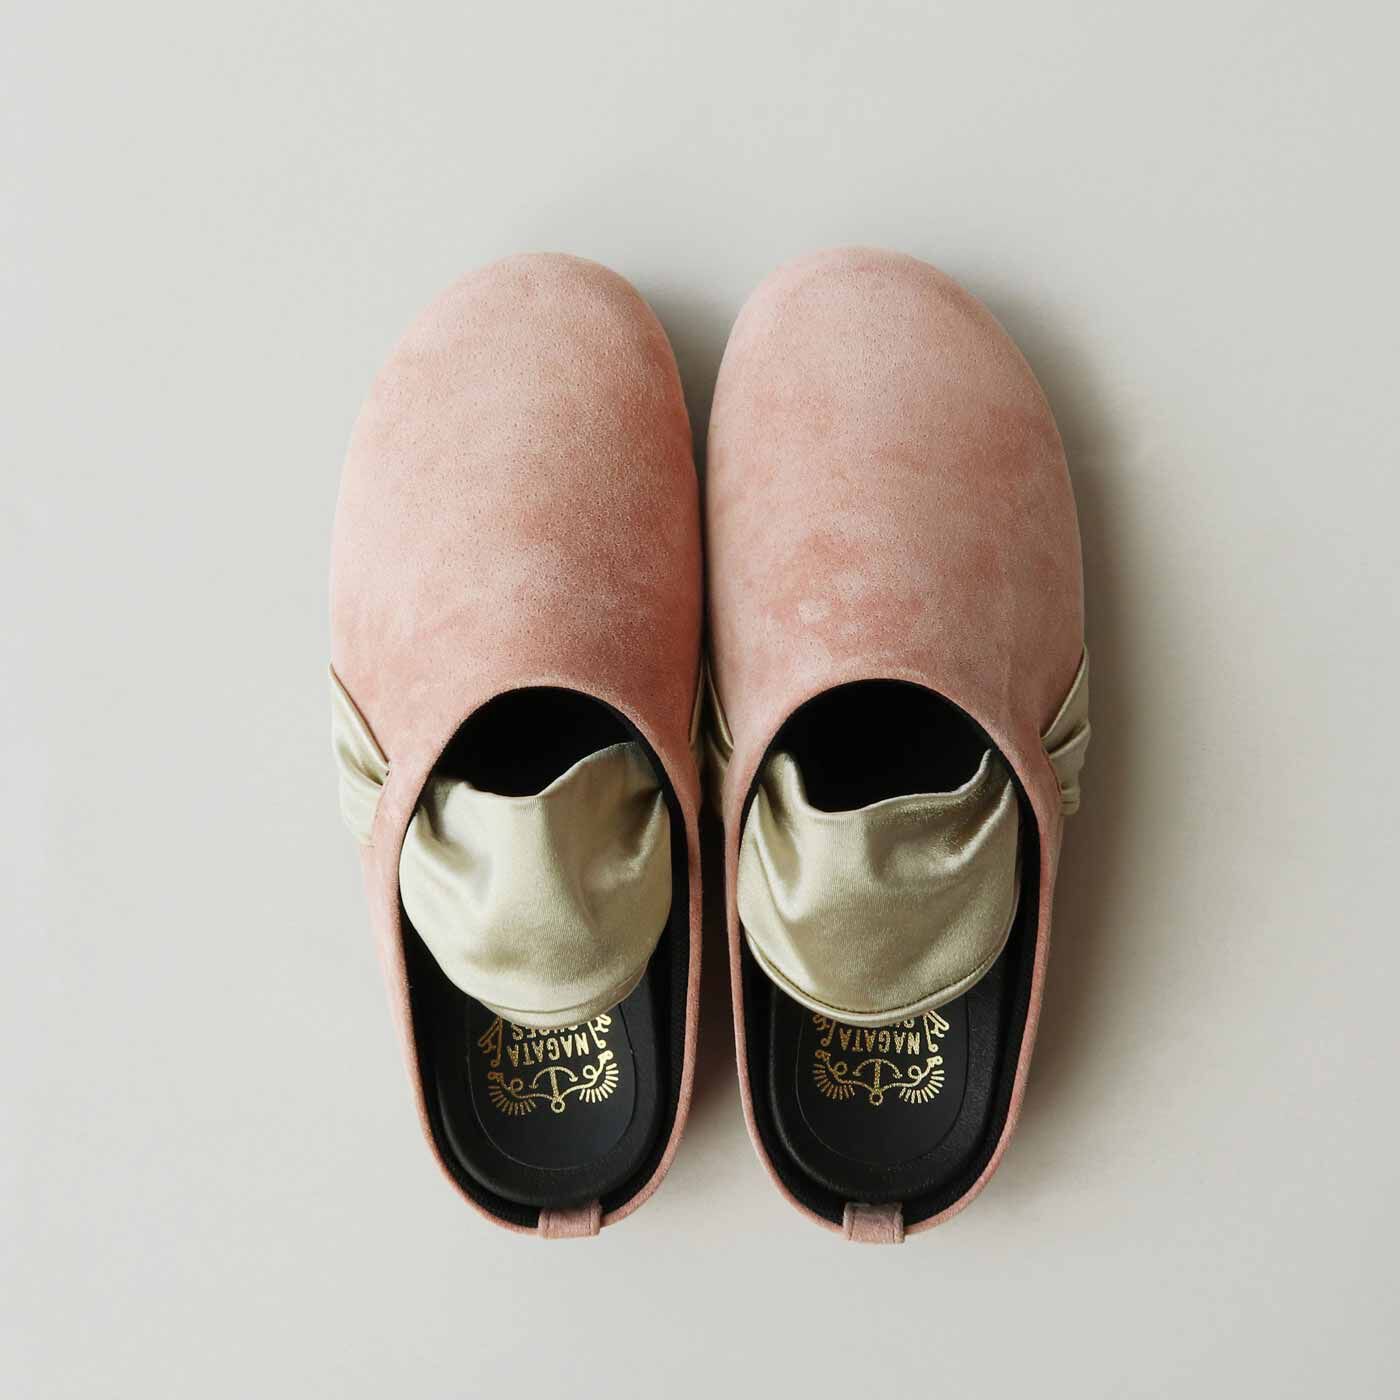 ＆Stories|長田の靴職人が作った 職人本革のパニーニサボシューズ〈ストロベリー〉|丸みのあるサボをほんのりシャープな形に整えて大人顔に。